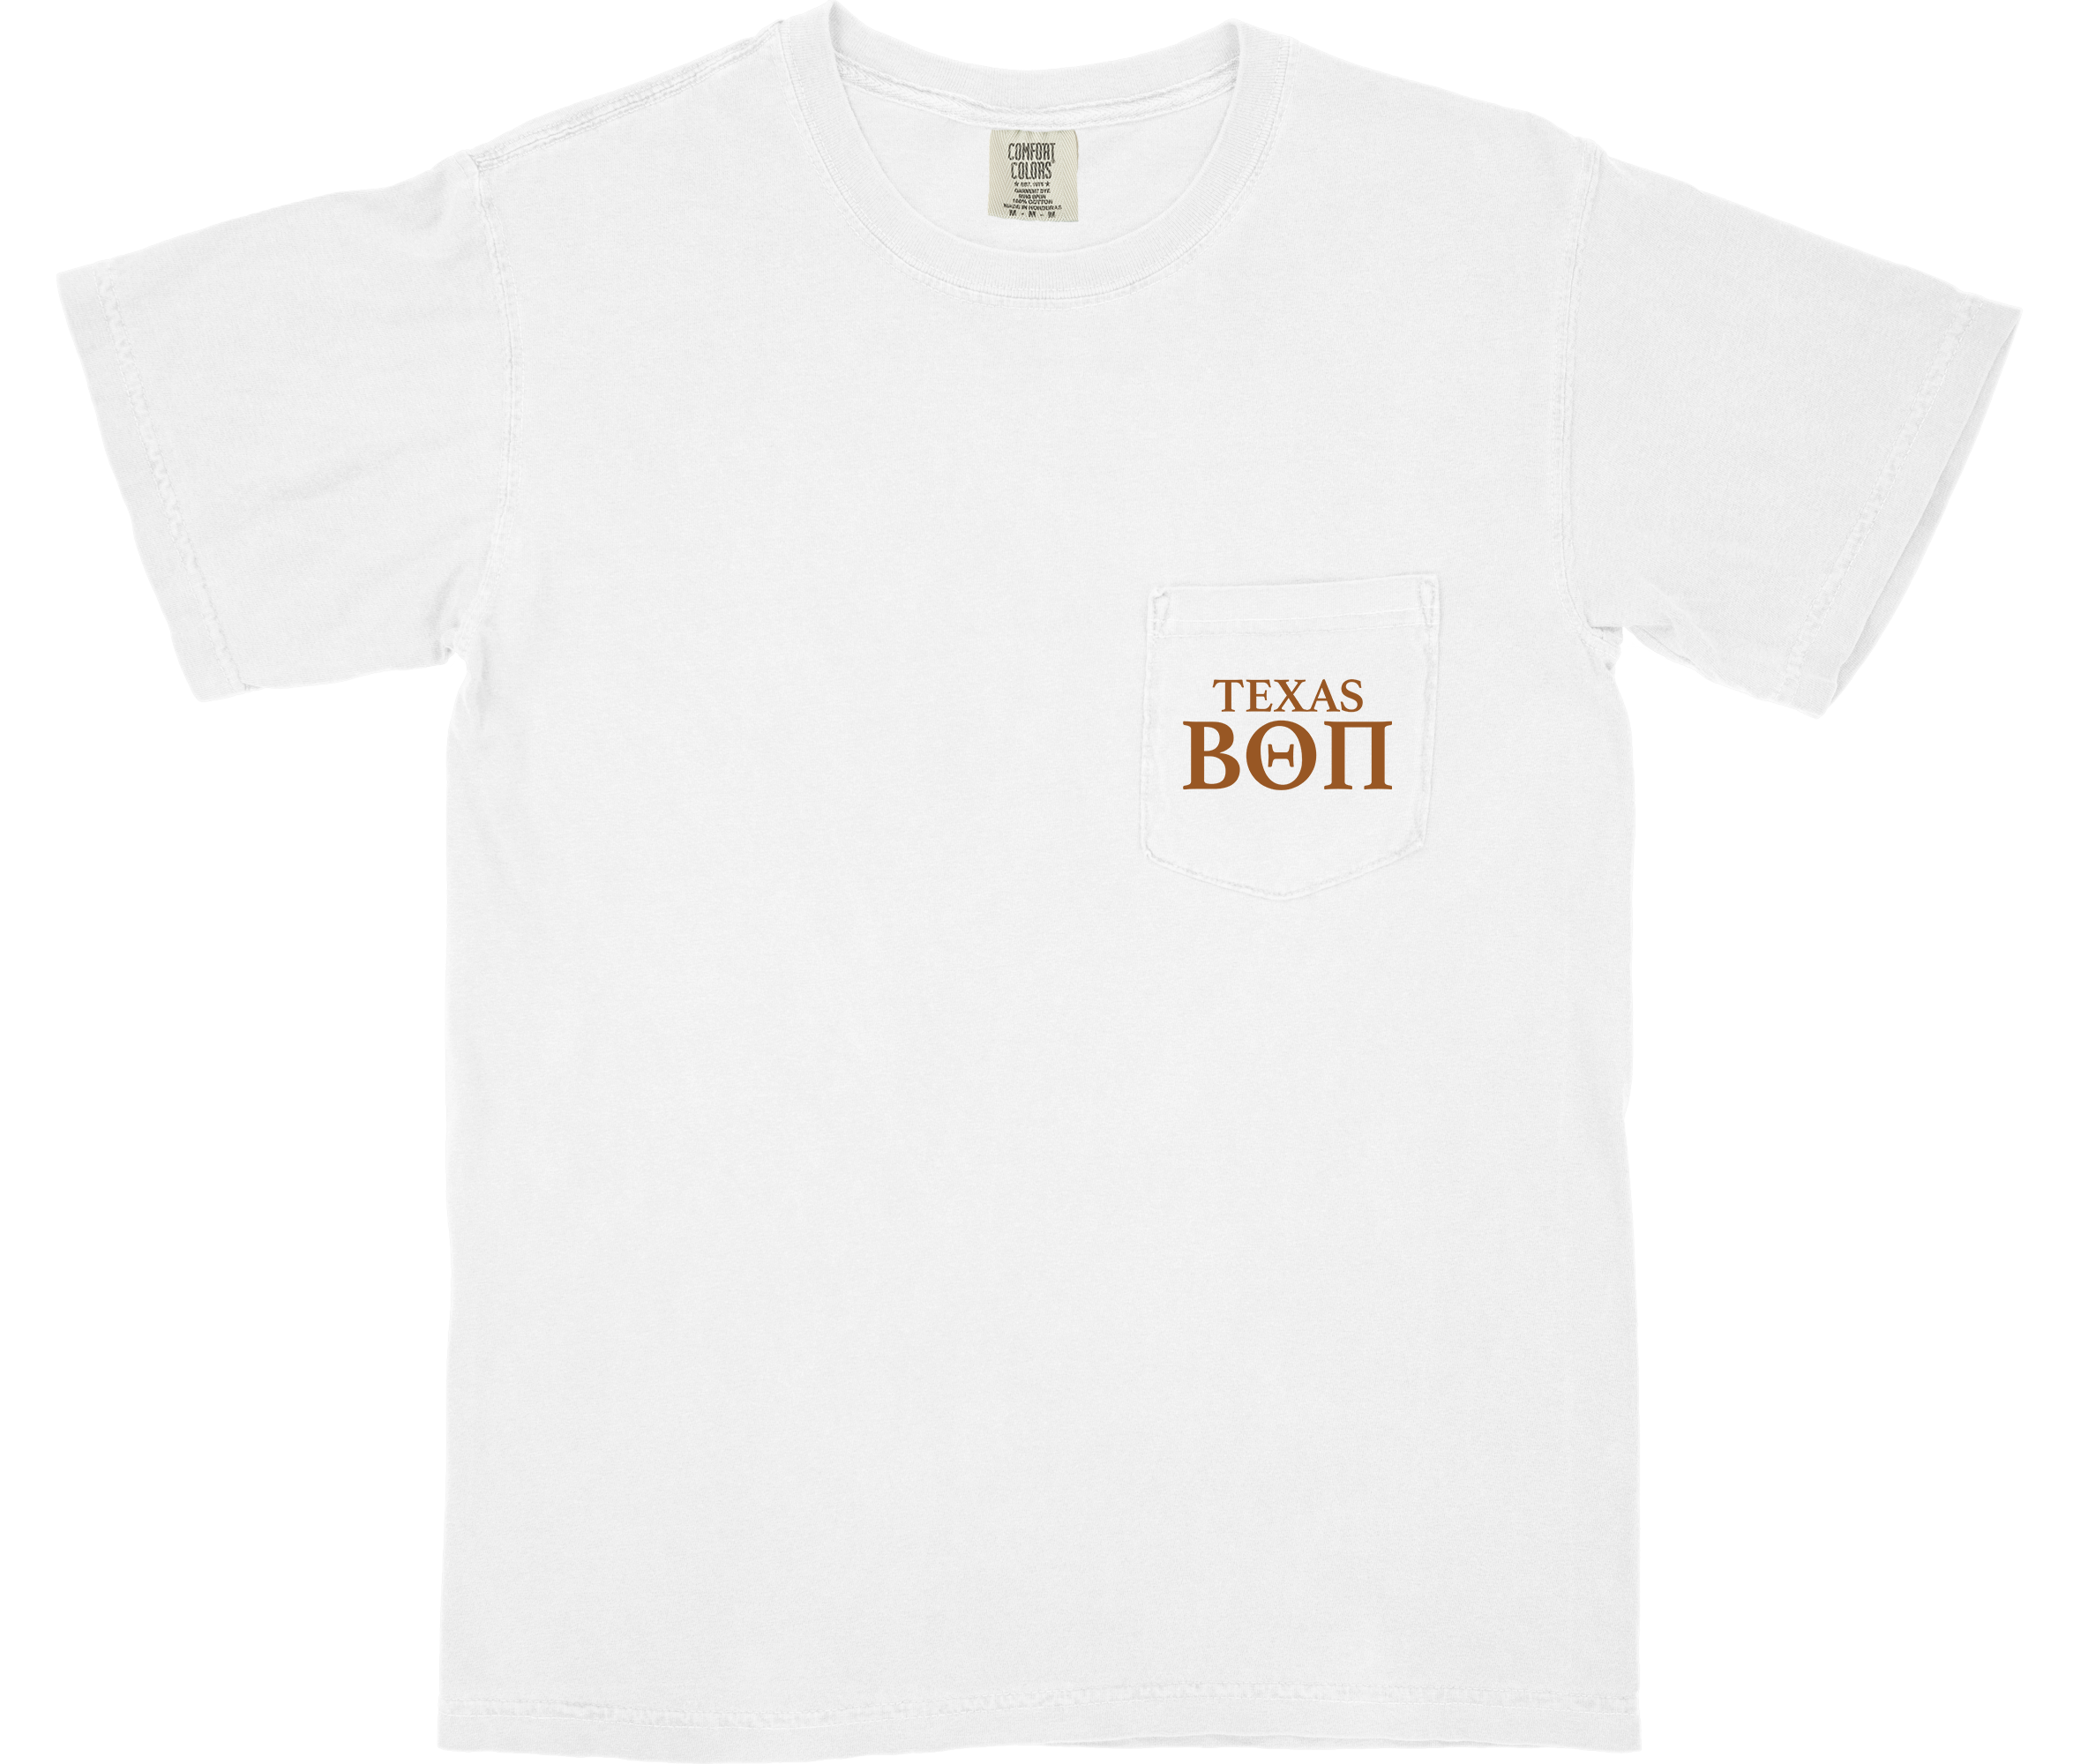 Hoos & Haus Shirt